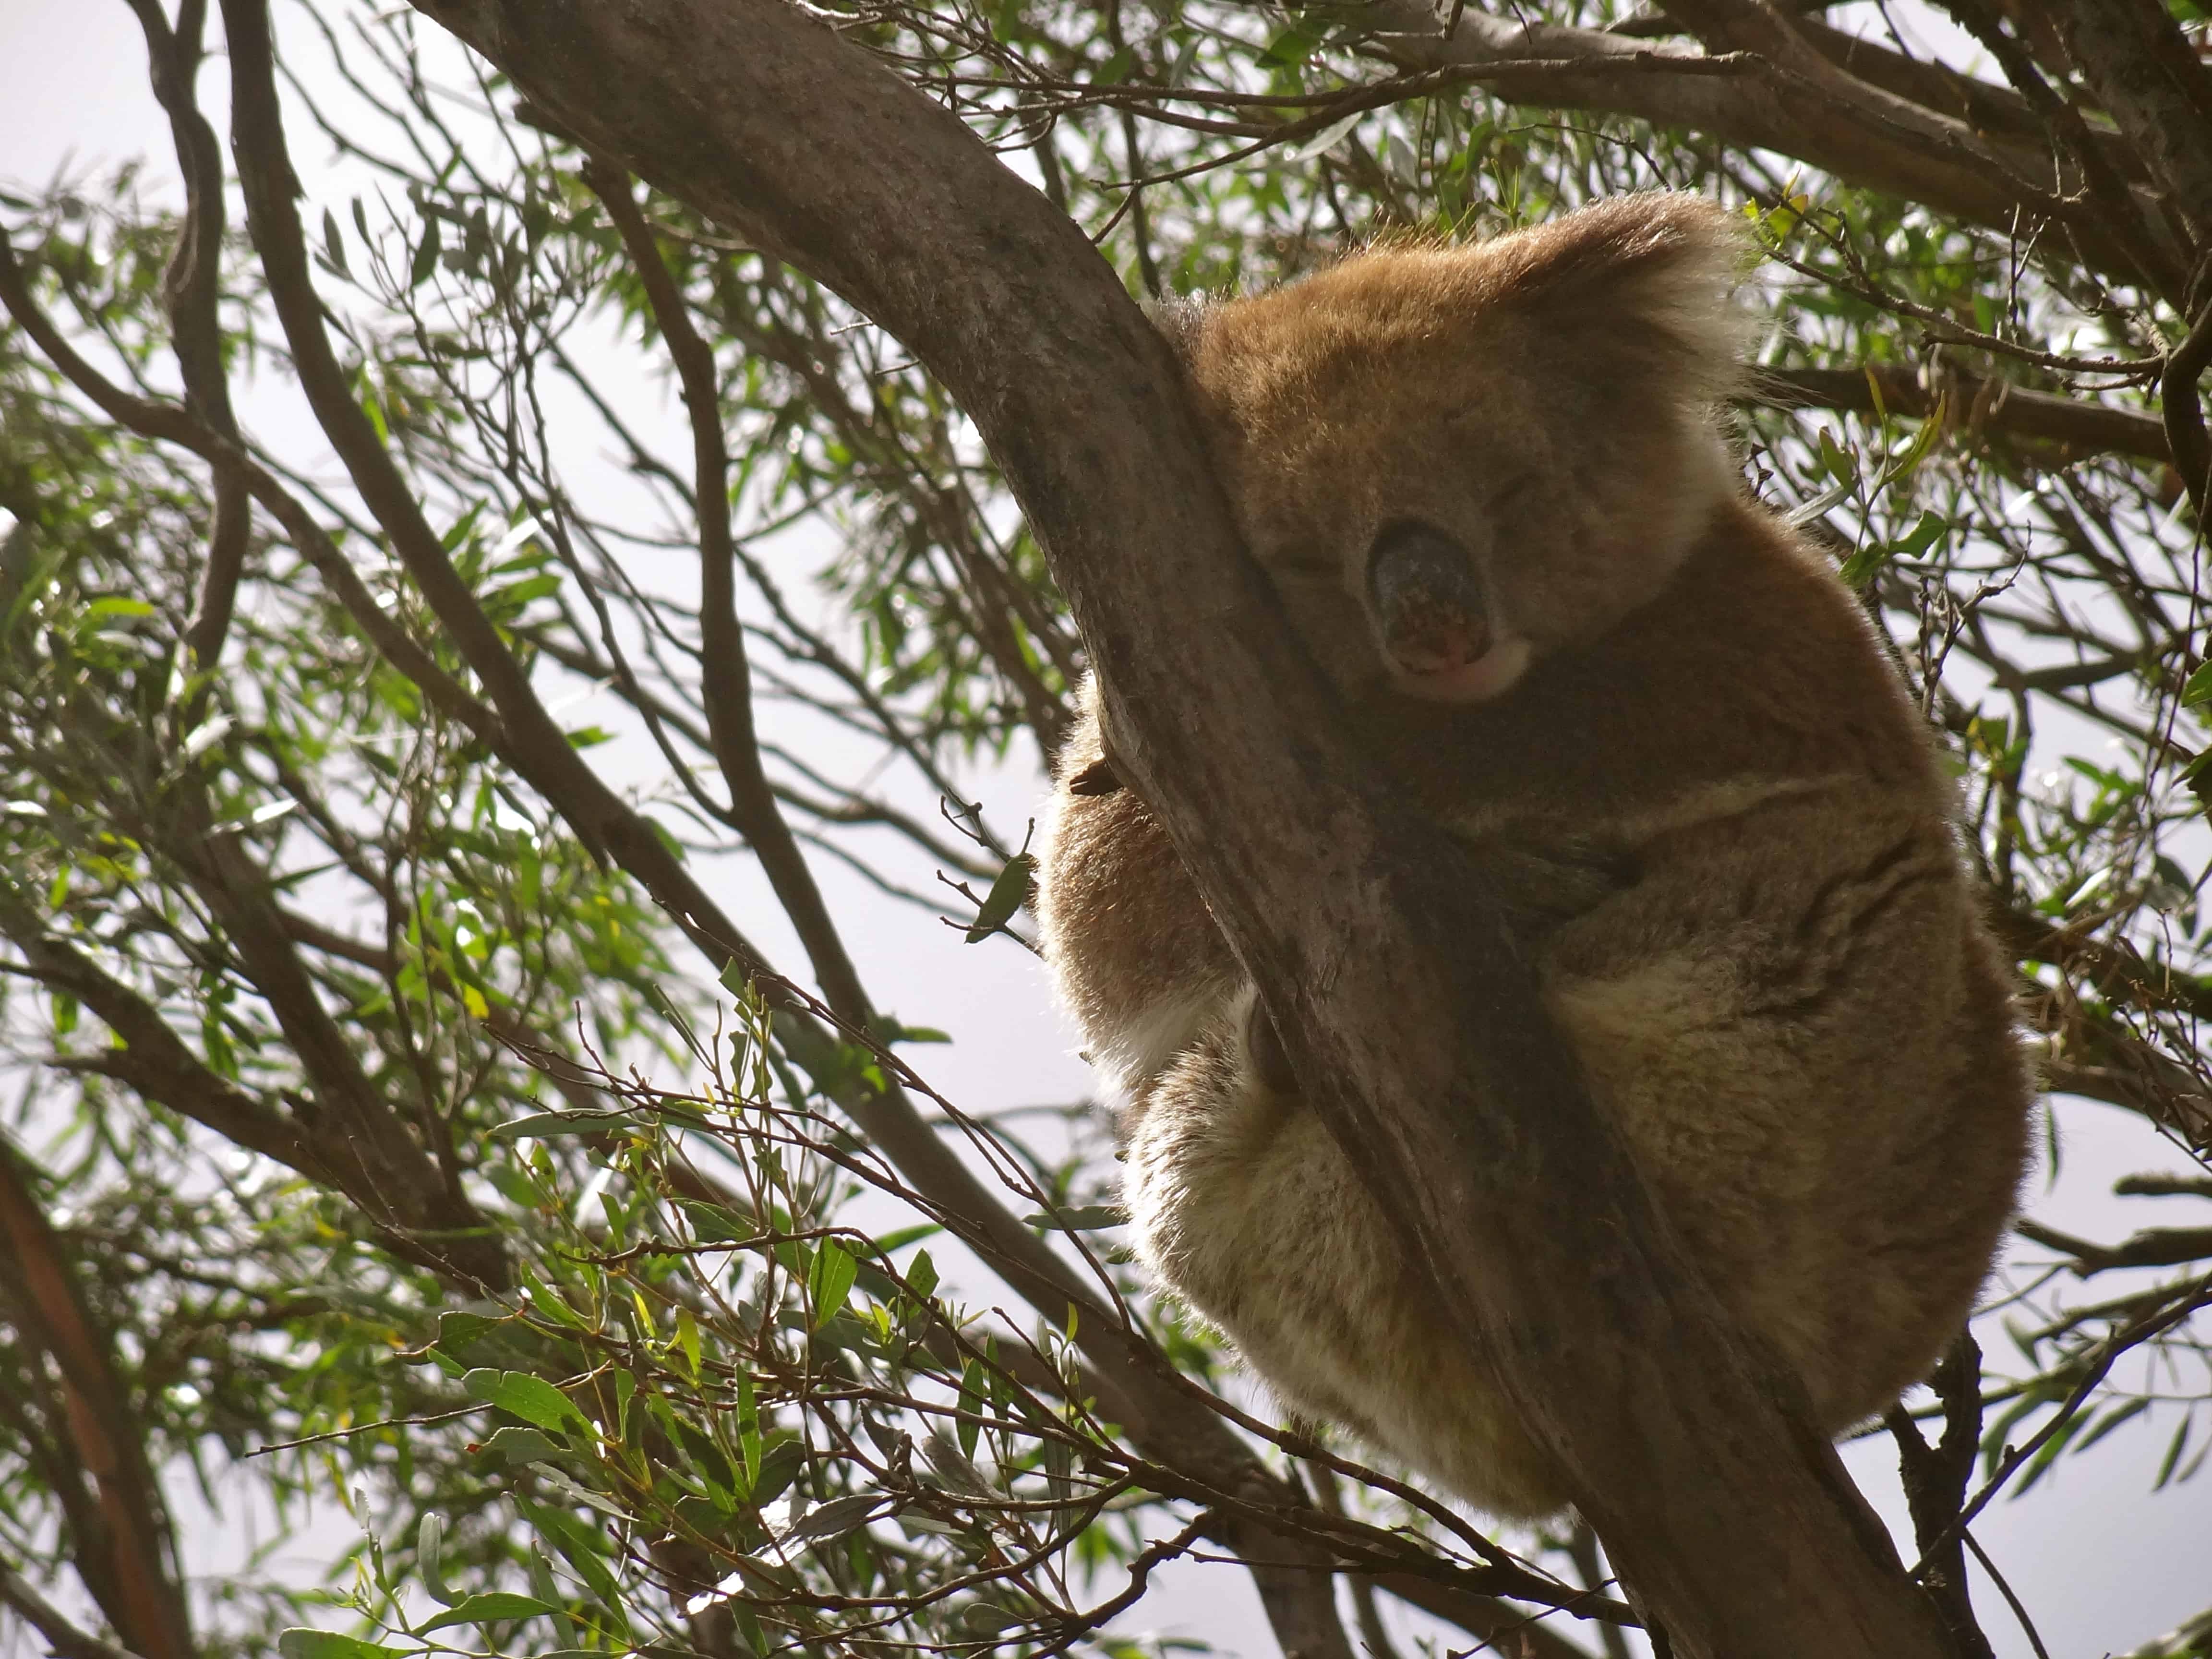 Australia koalas, Australian wildlife, kangaroo island koalas